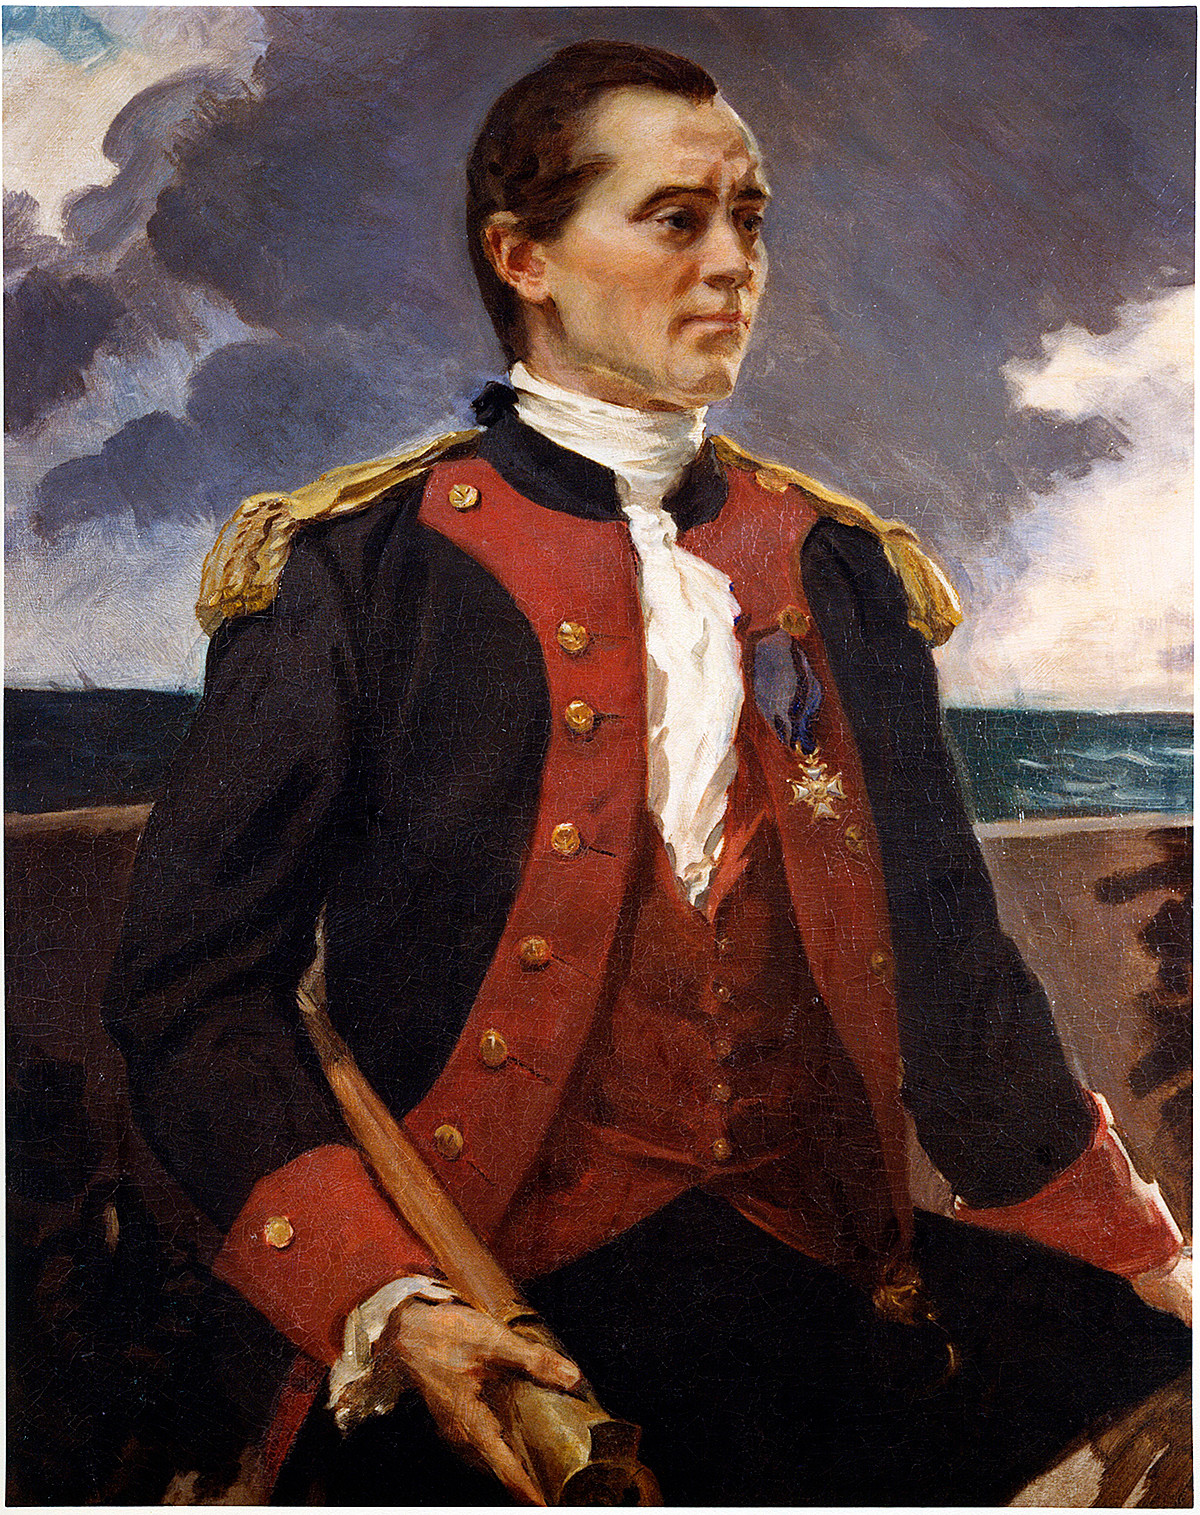 Portrait of Captain John Paul Jones by Cecilia Beaux